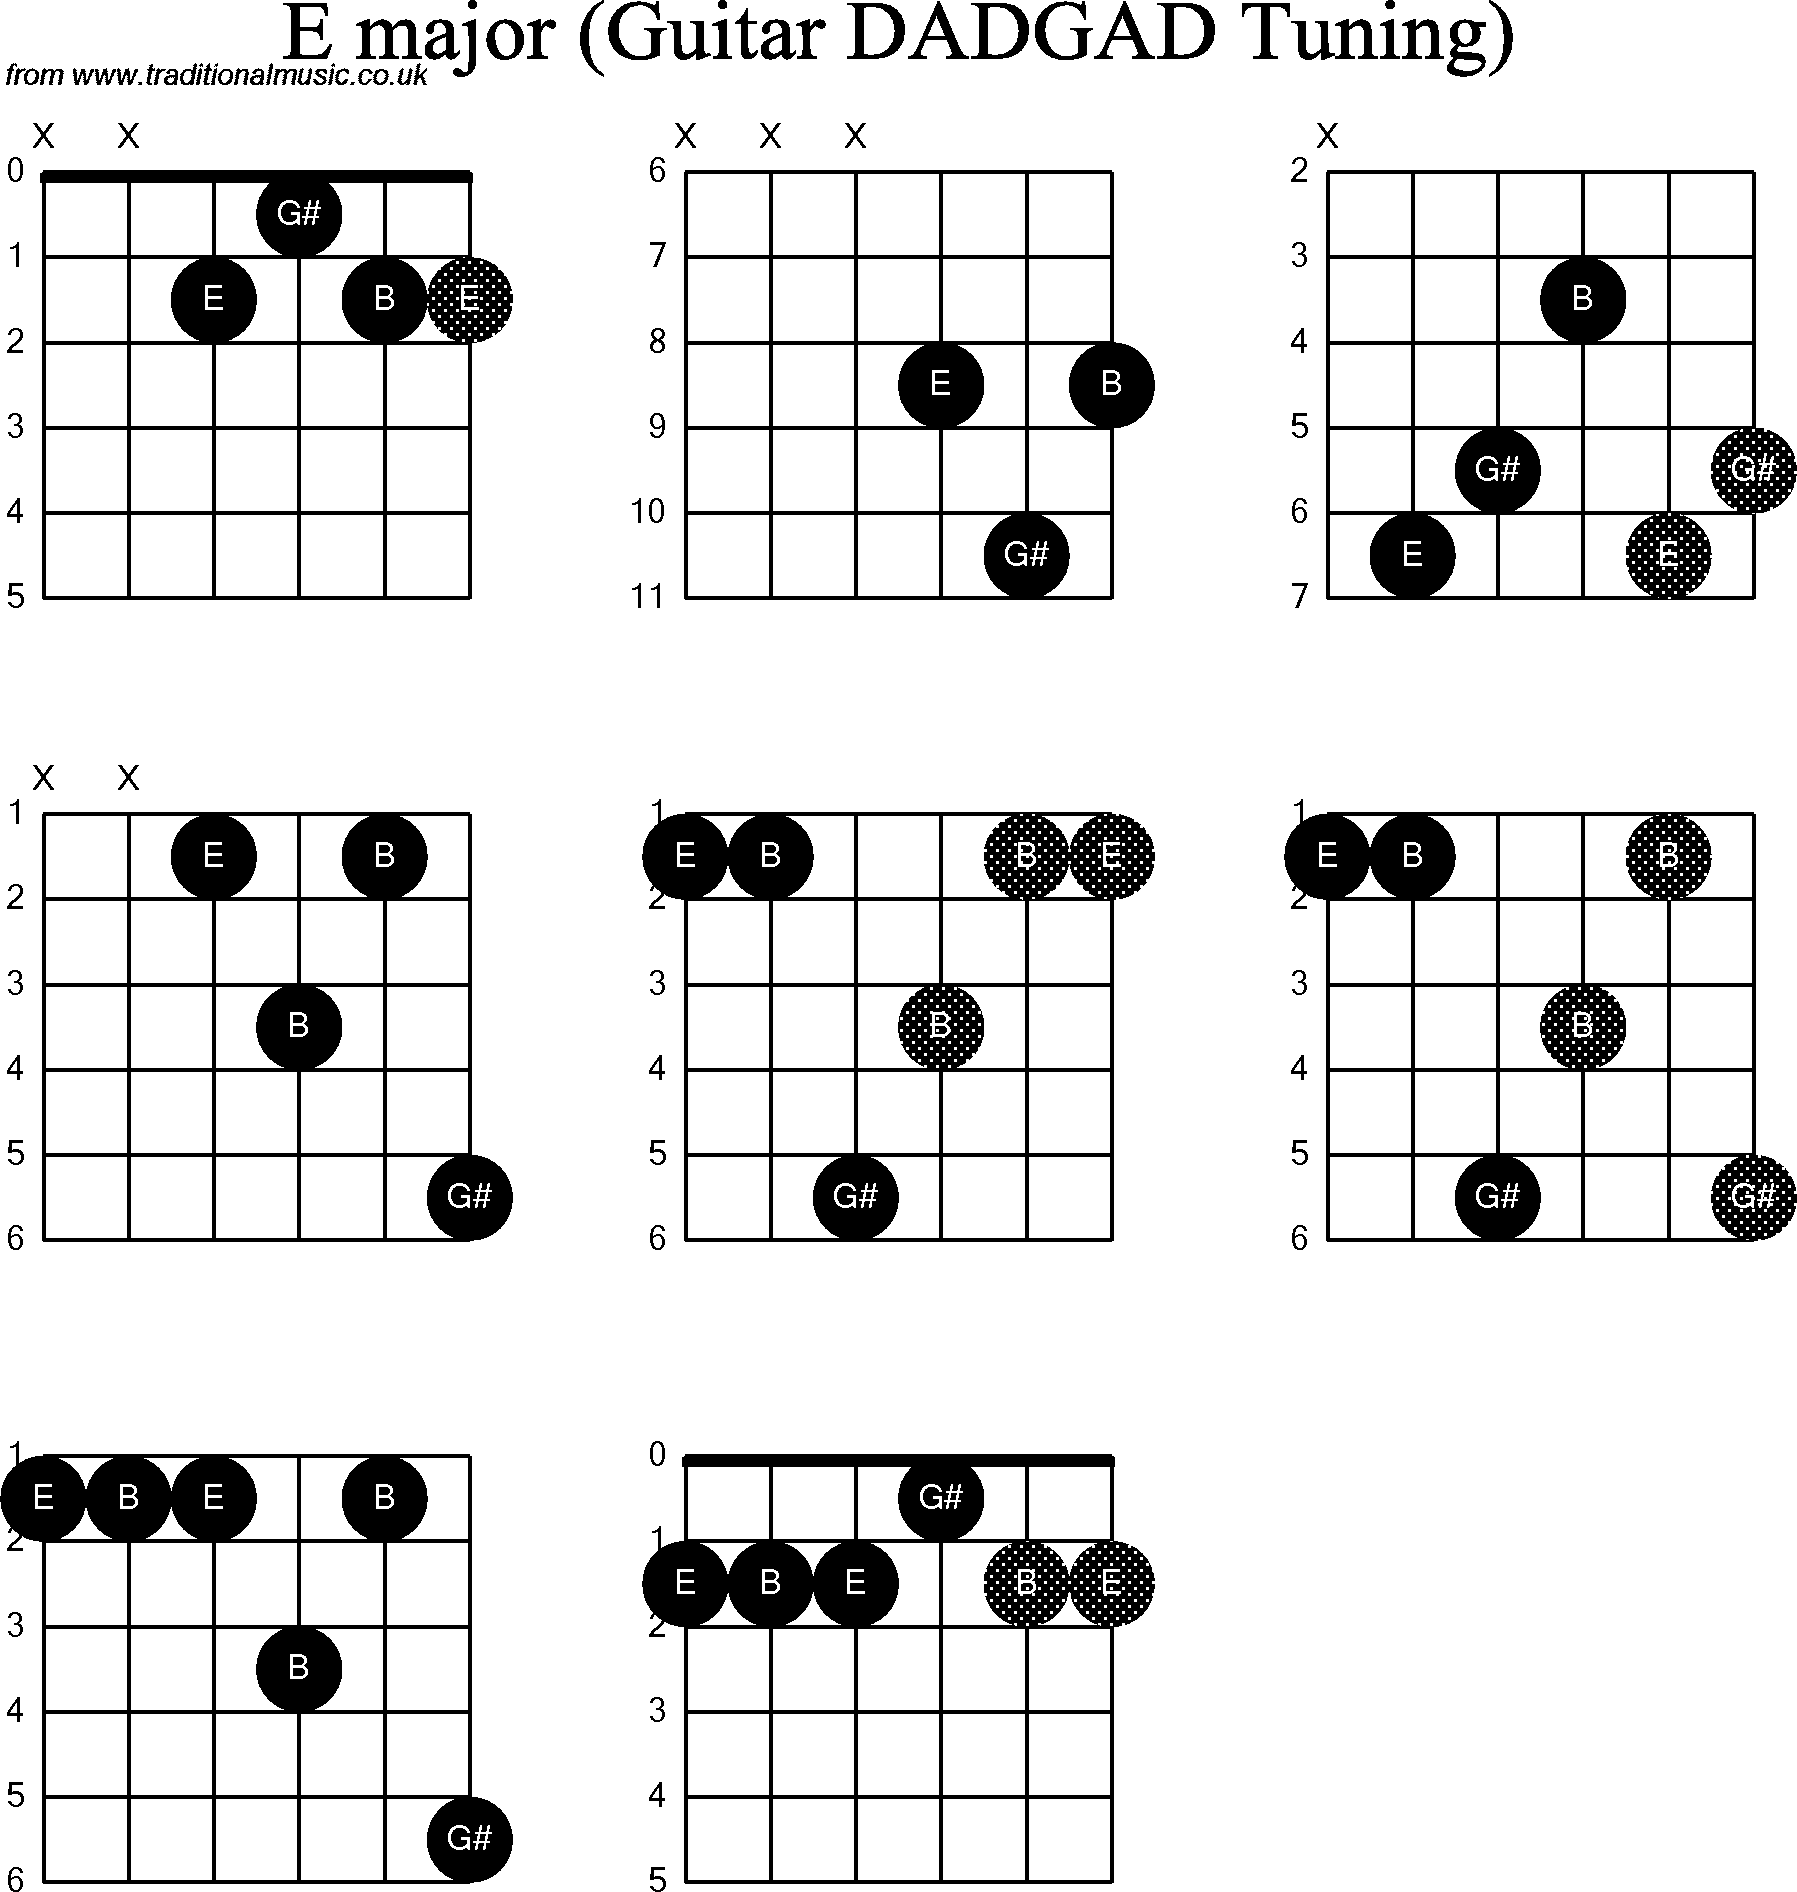 Chord Diagrams for D Modal Guitar(DADGAD), E